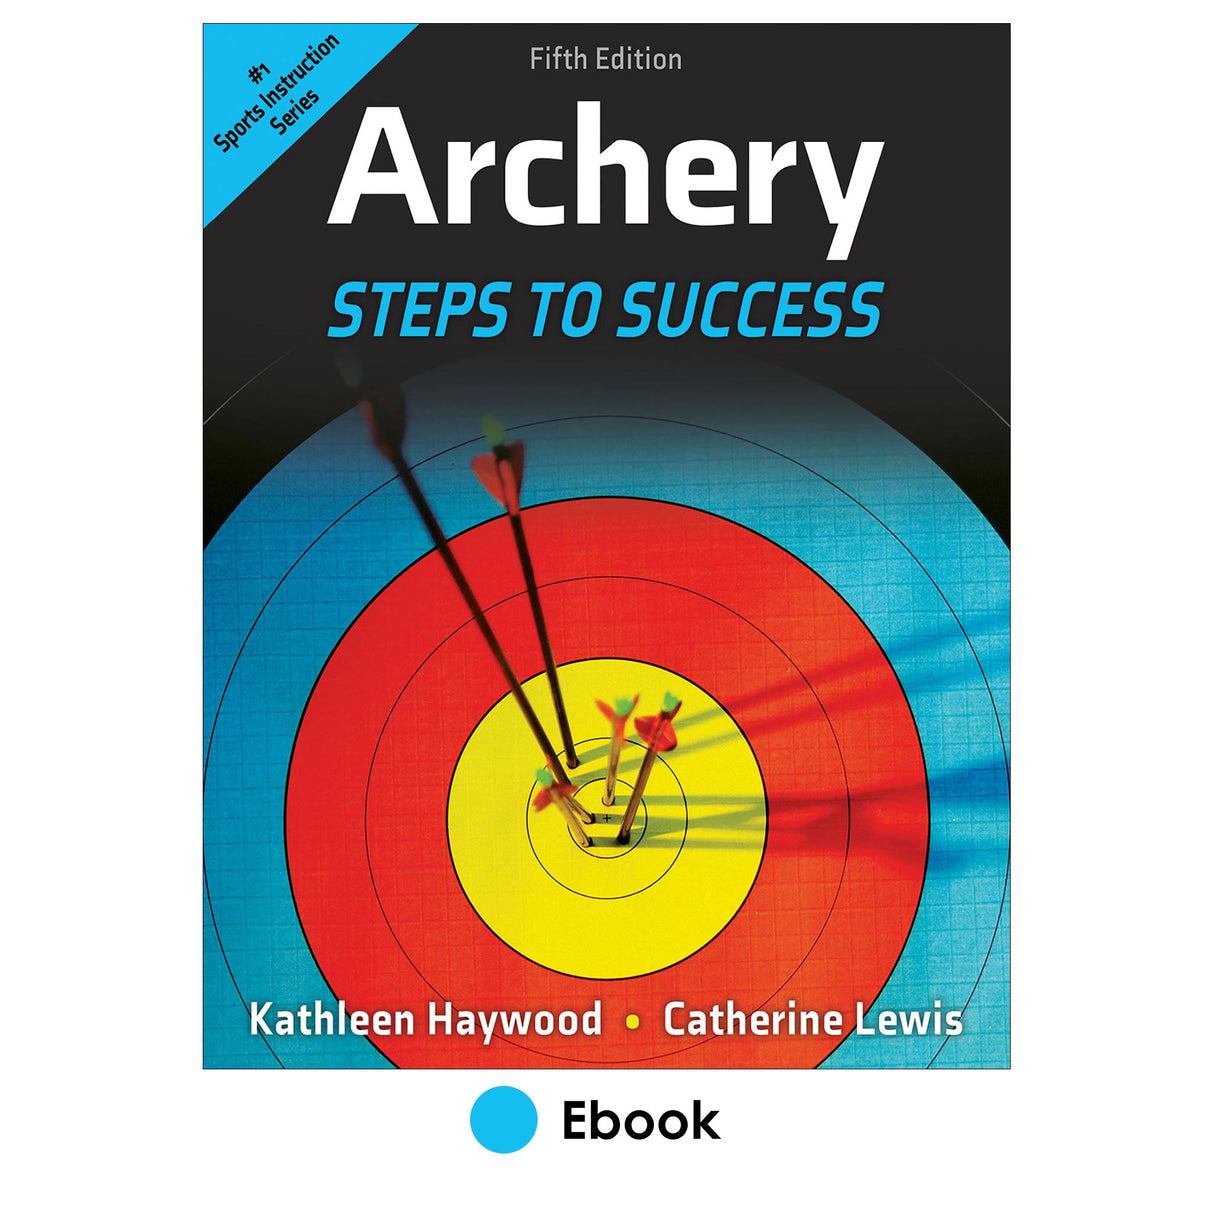 Archery 5th Edition epub